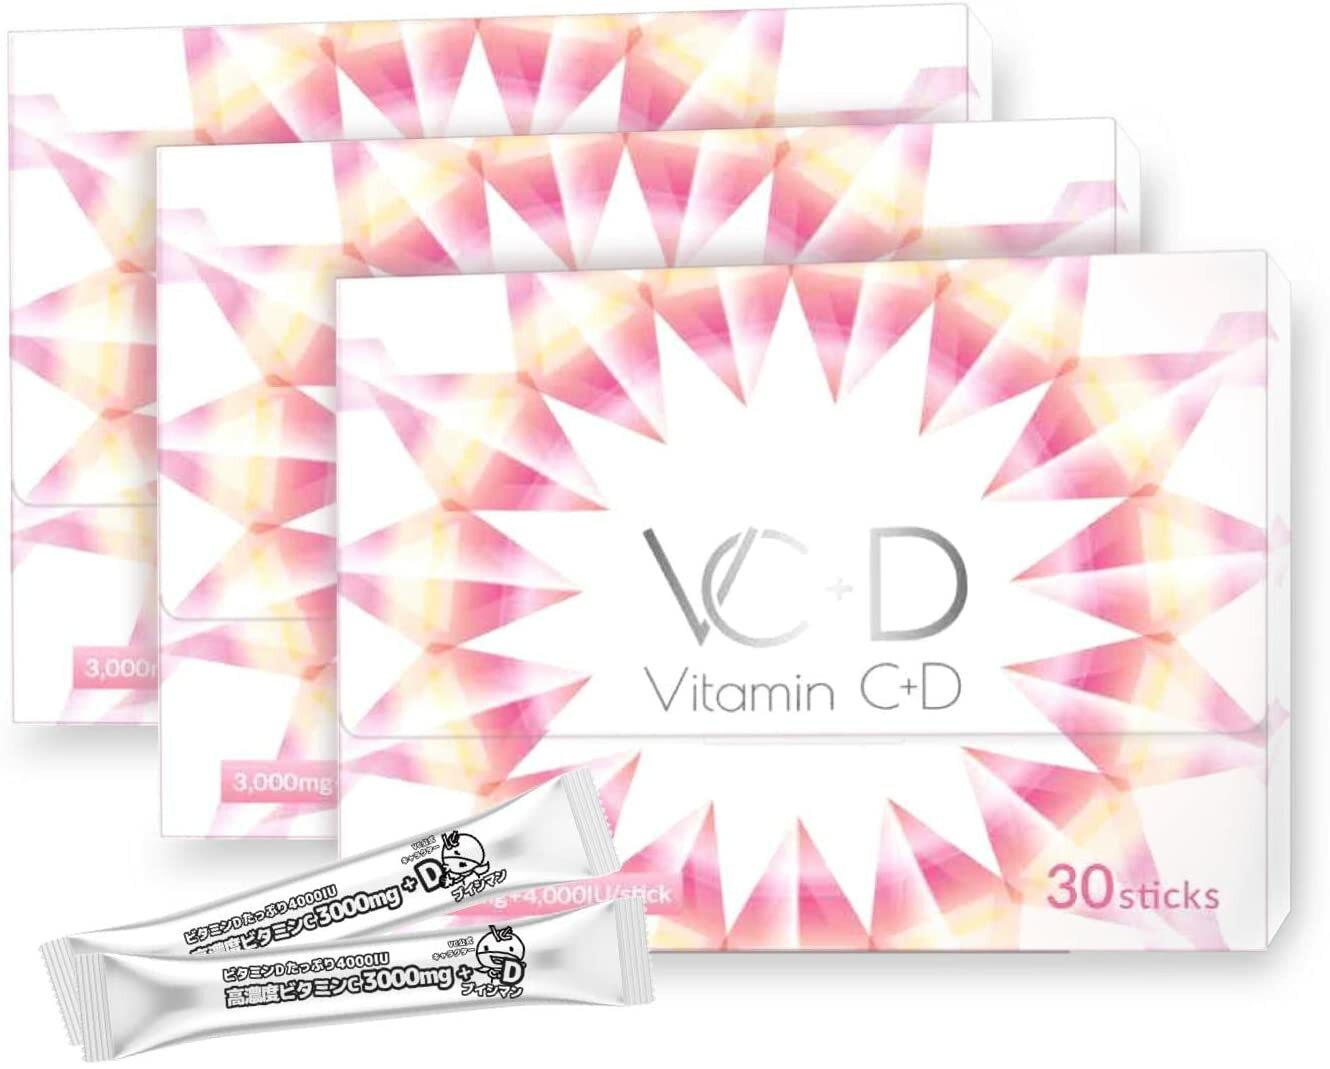 ビタミンC 3000mg ビタミンD 4000IU サプリメント 粉末 スティック VC+D 高濃度 イギリス産ビタミンC 30包 (3箱セット)